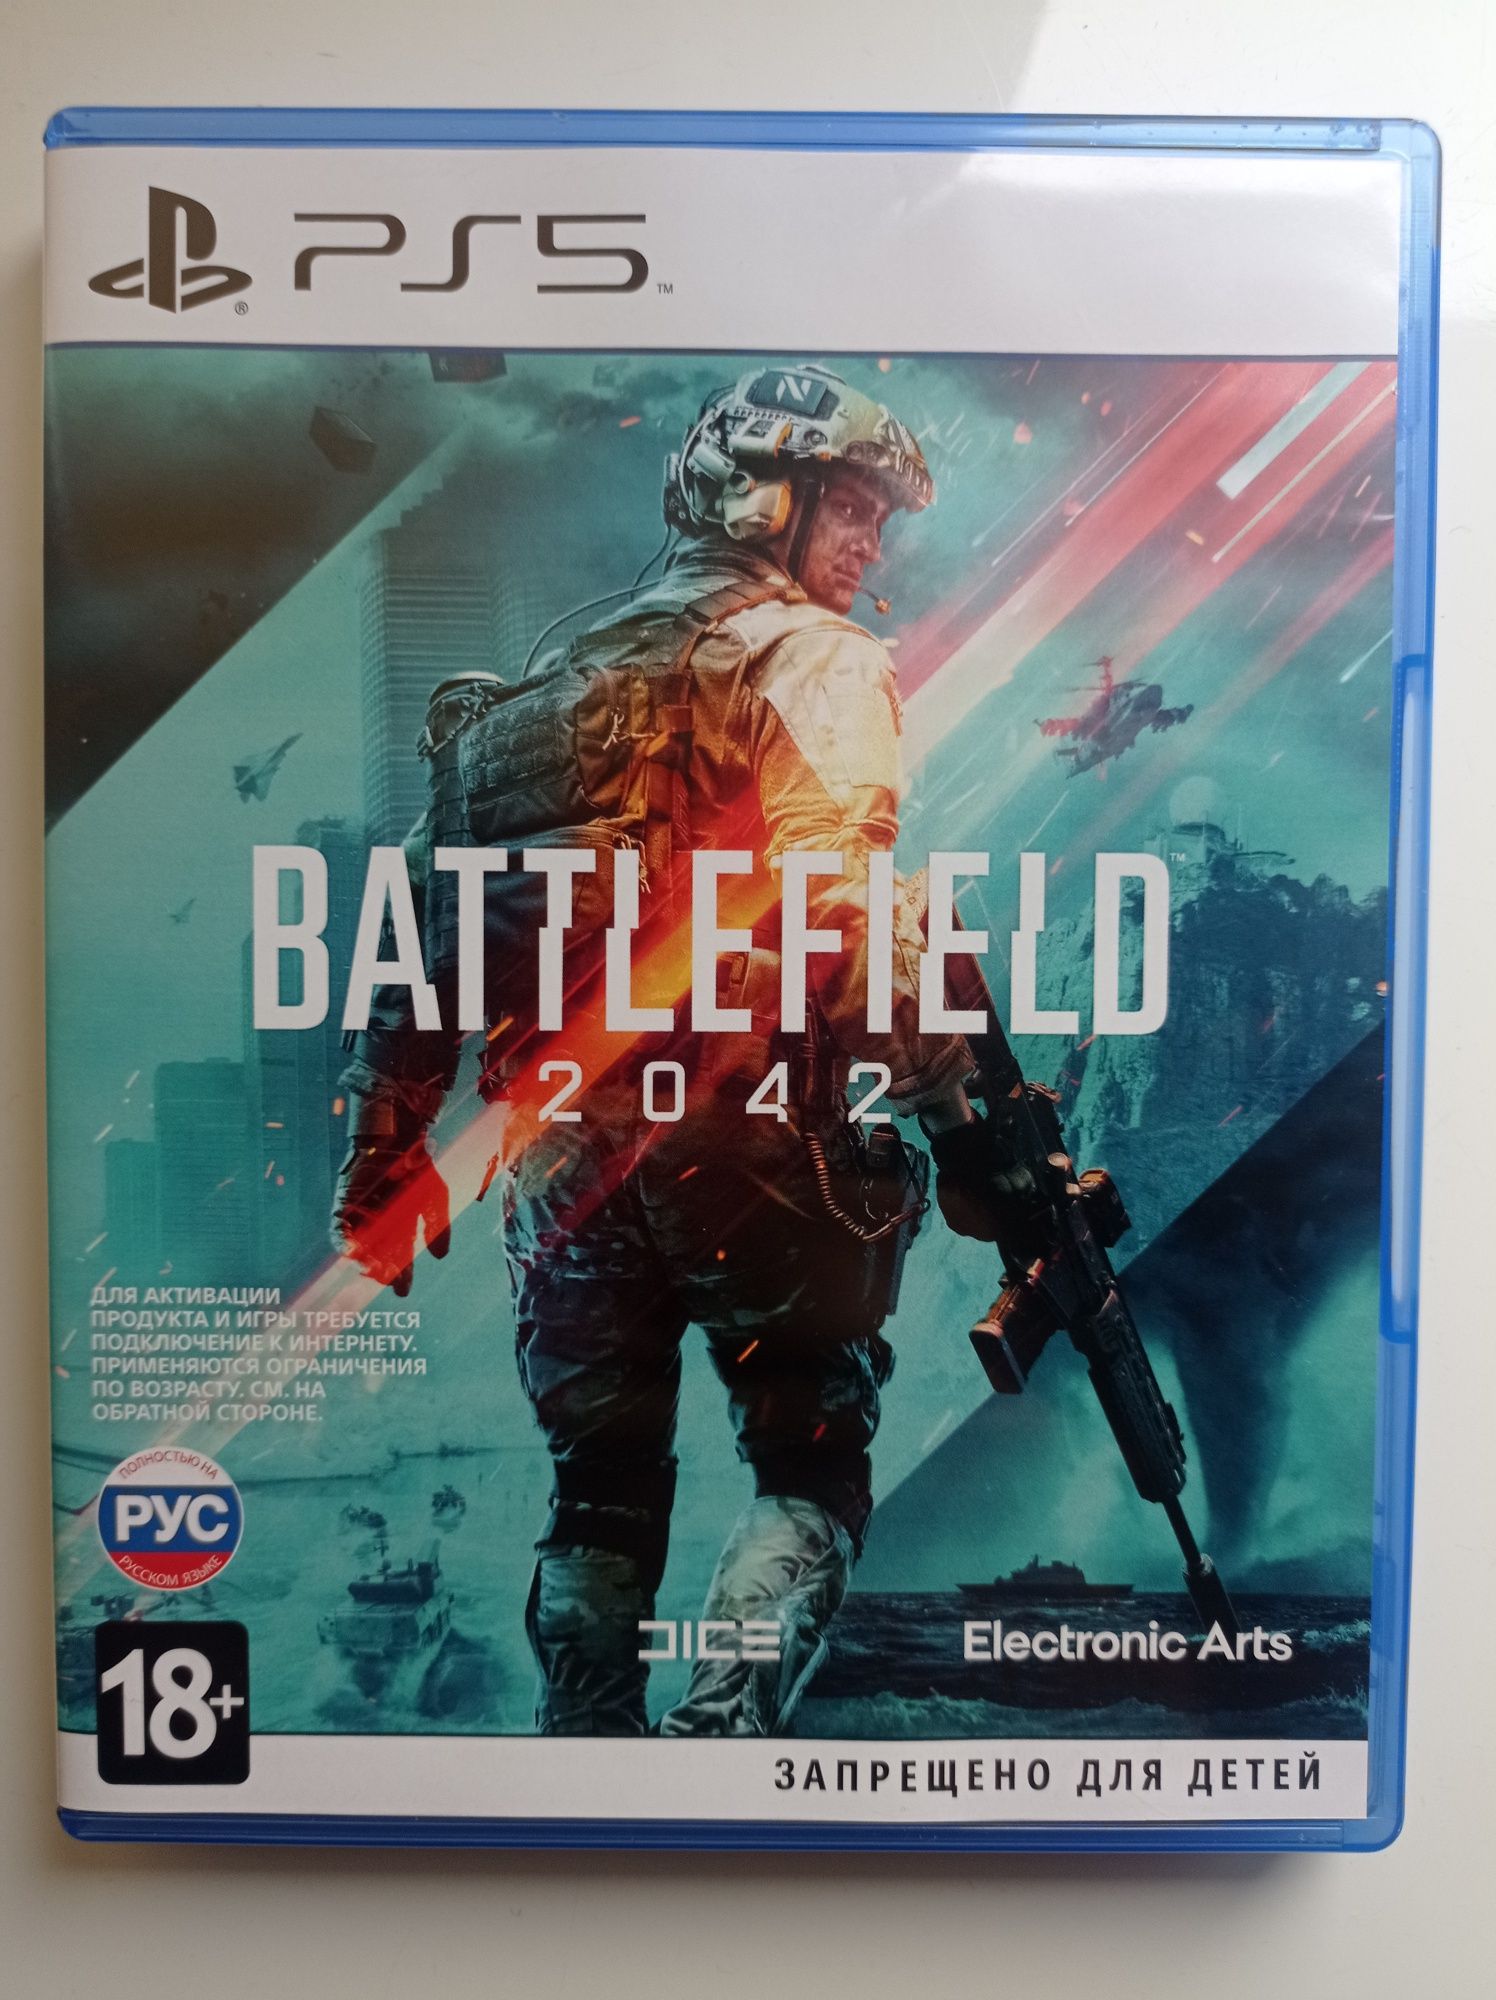 Гра Battlefield 2042 для PS5 (Blu-ray диск, Russian version)